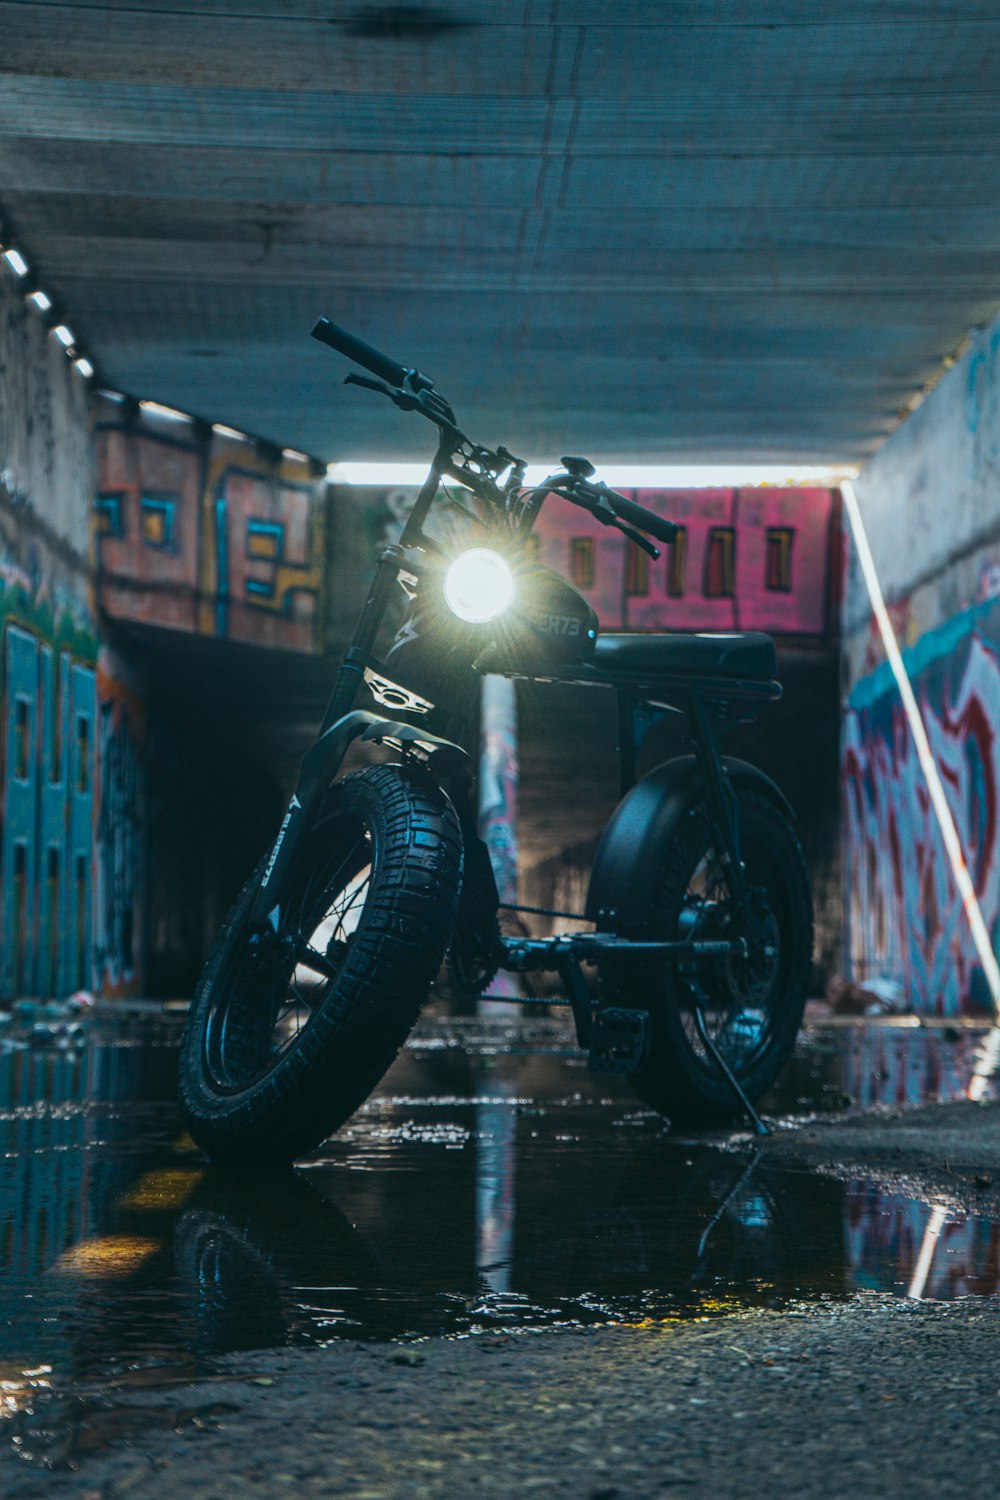 uma motocicleta estacionada em um túnel com pichações nas paredes